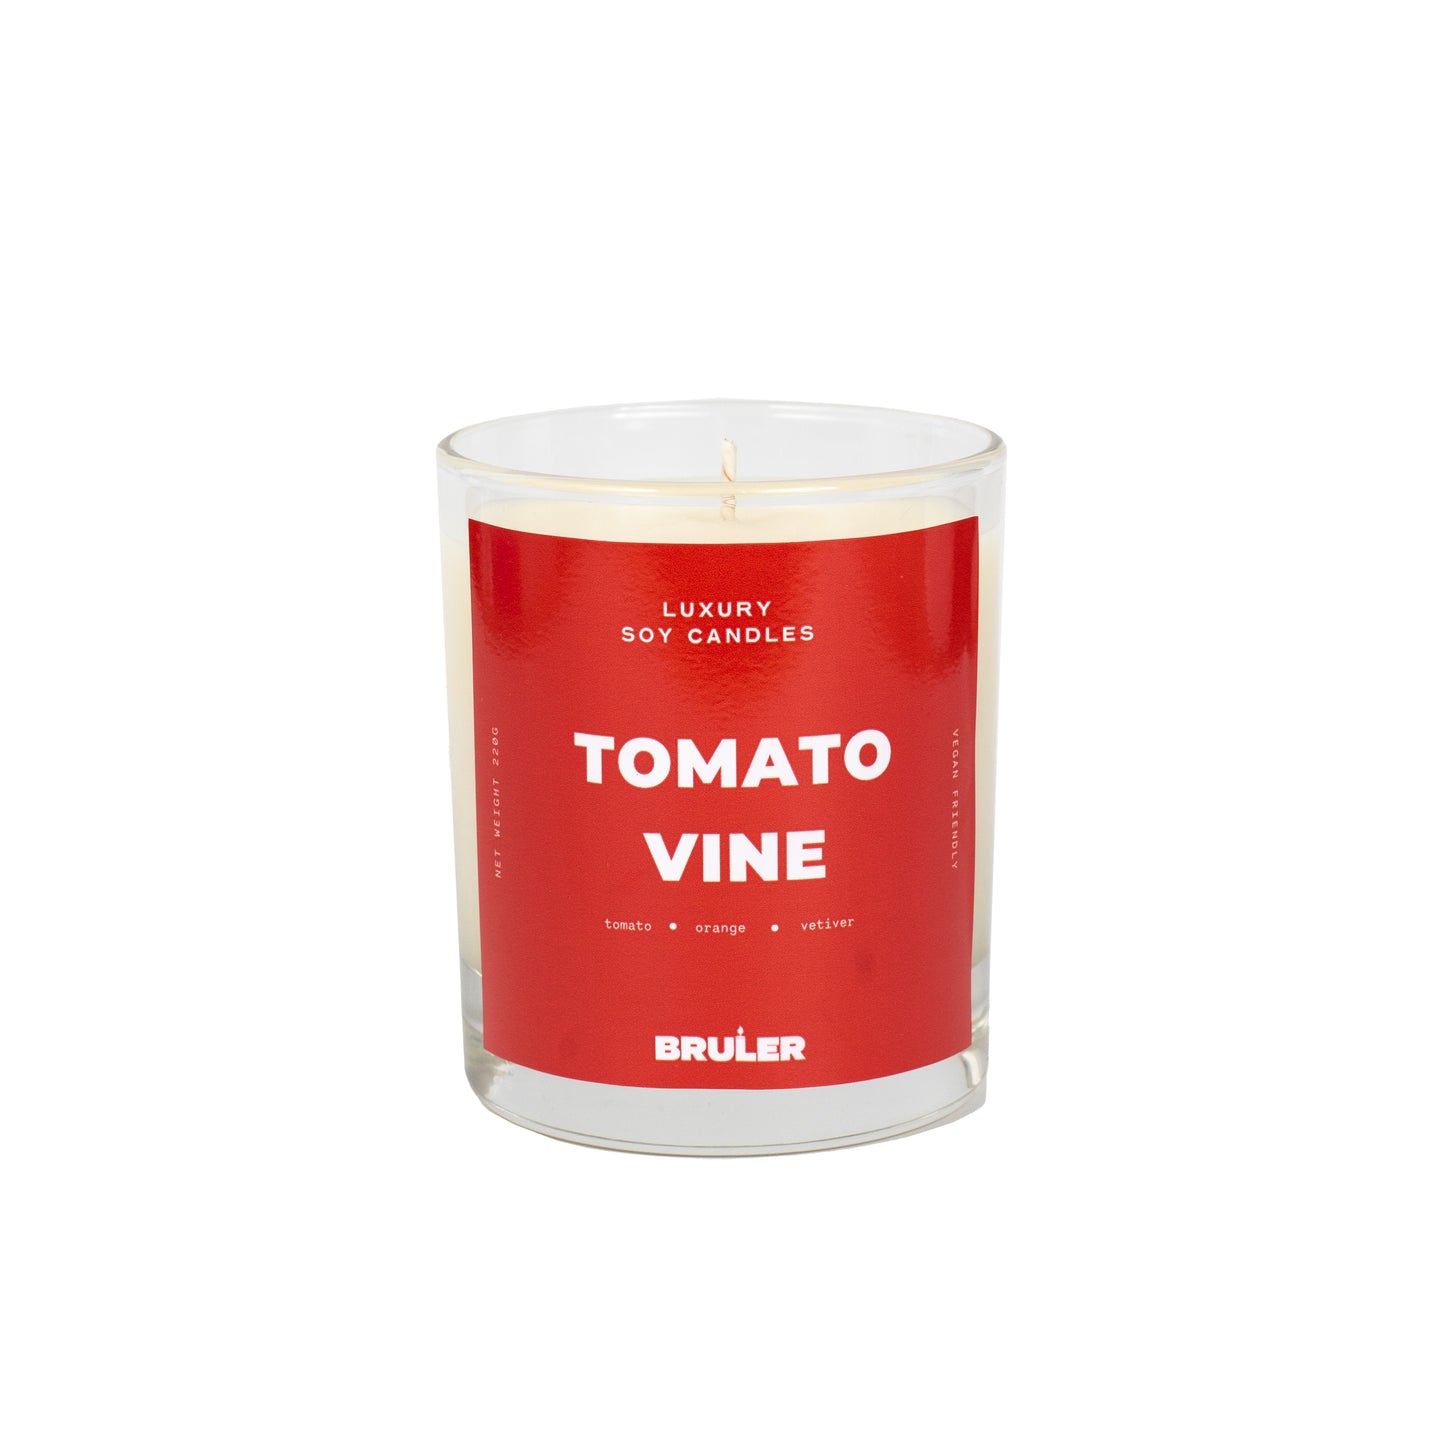 Tomato Vine Candle